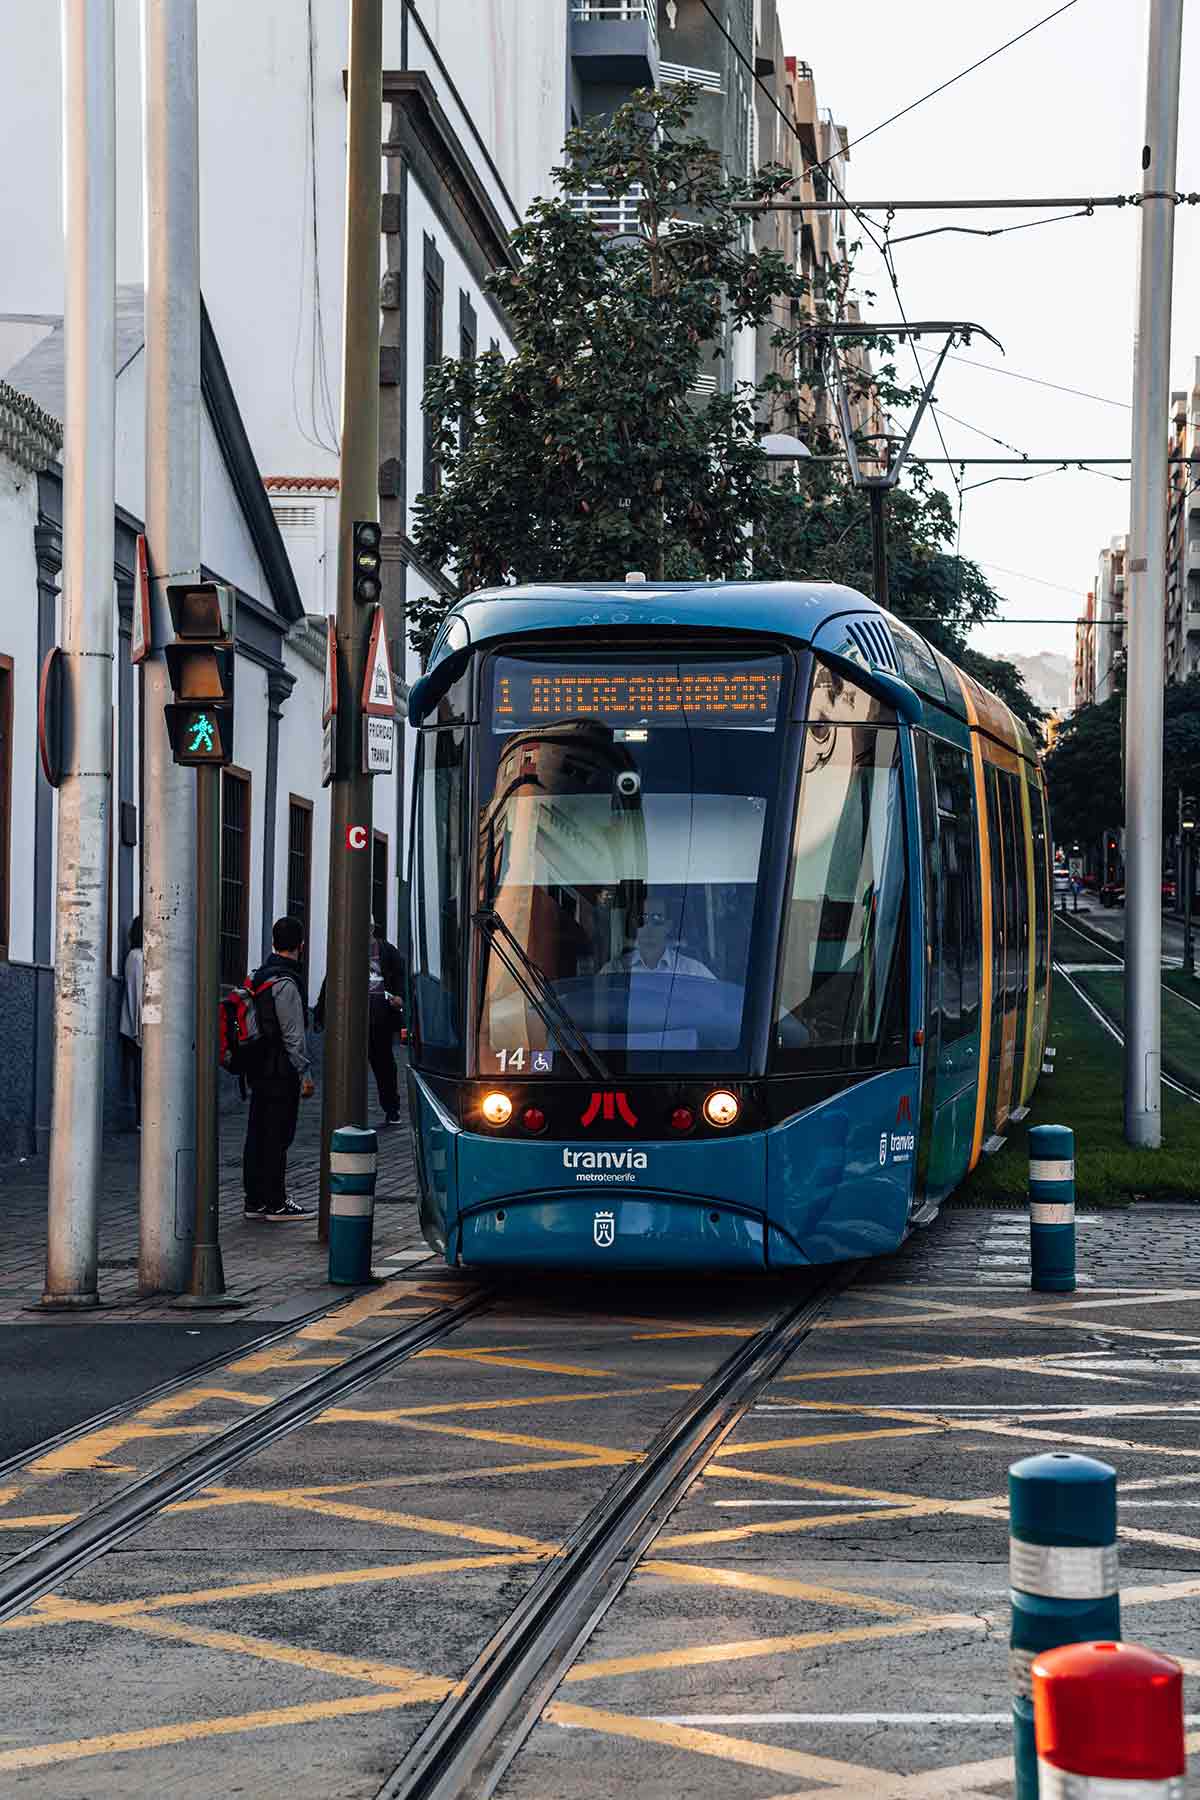 The tram in Santa Cruz, Tenerife